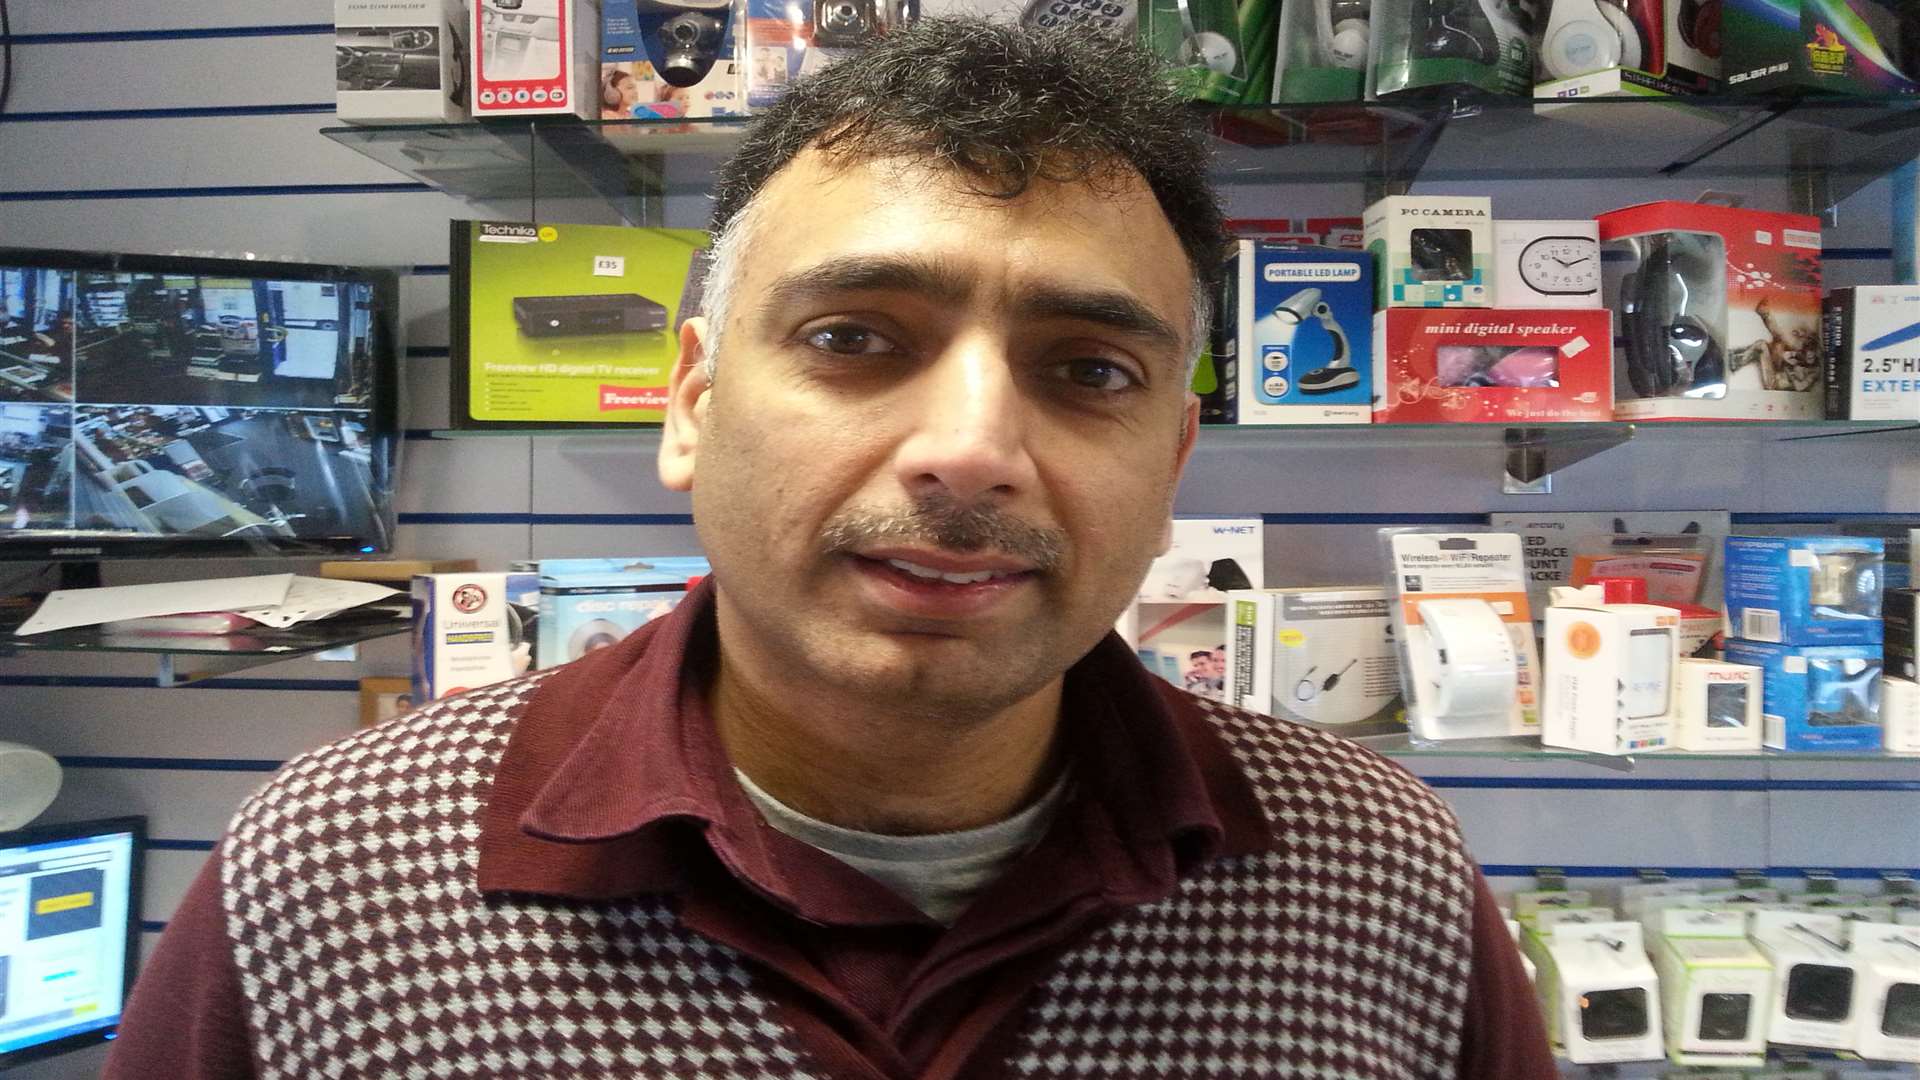 Kash Anwer, owner of Kash-tech mobiles